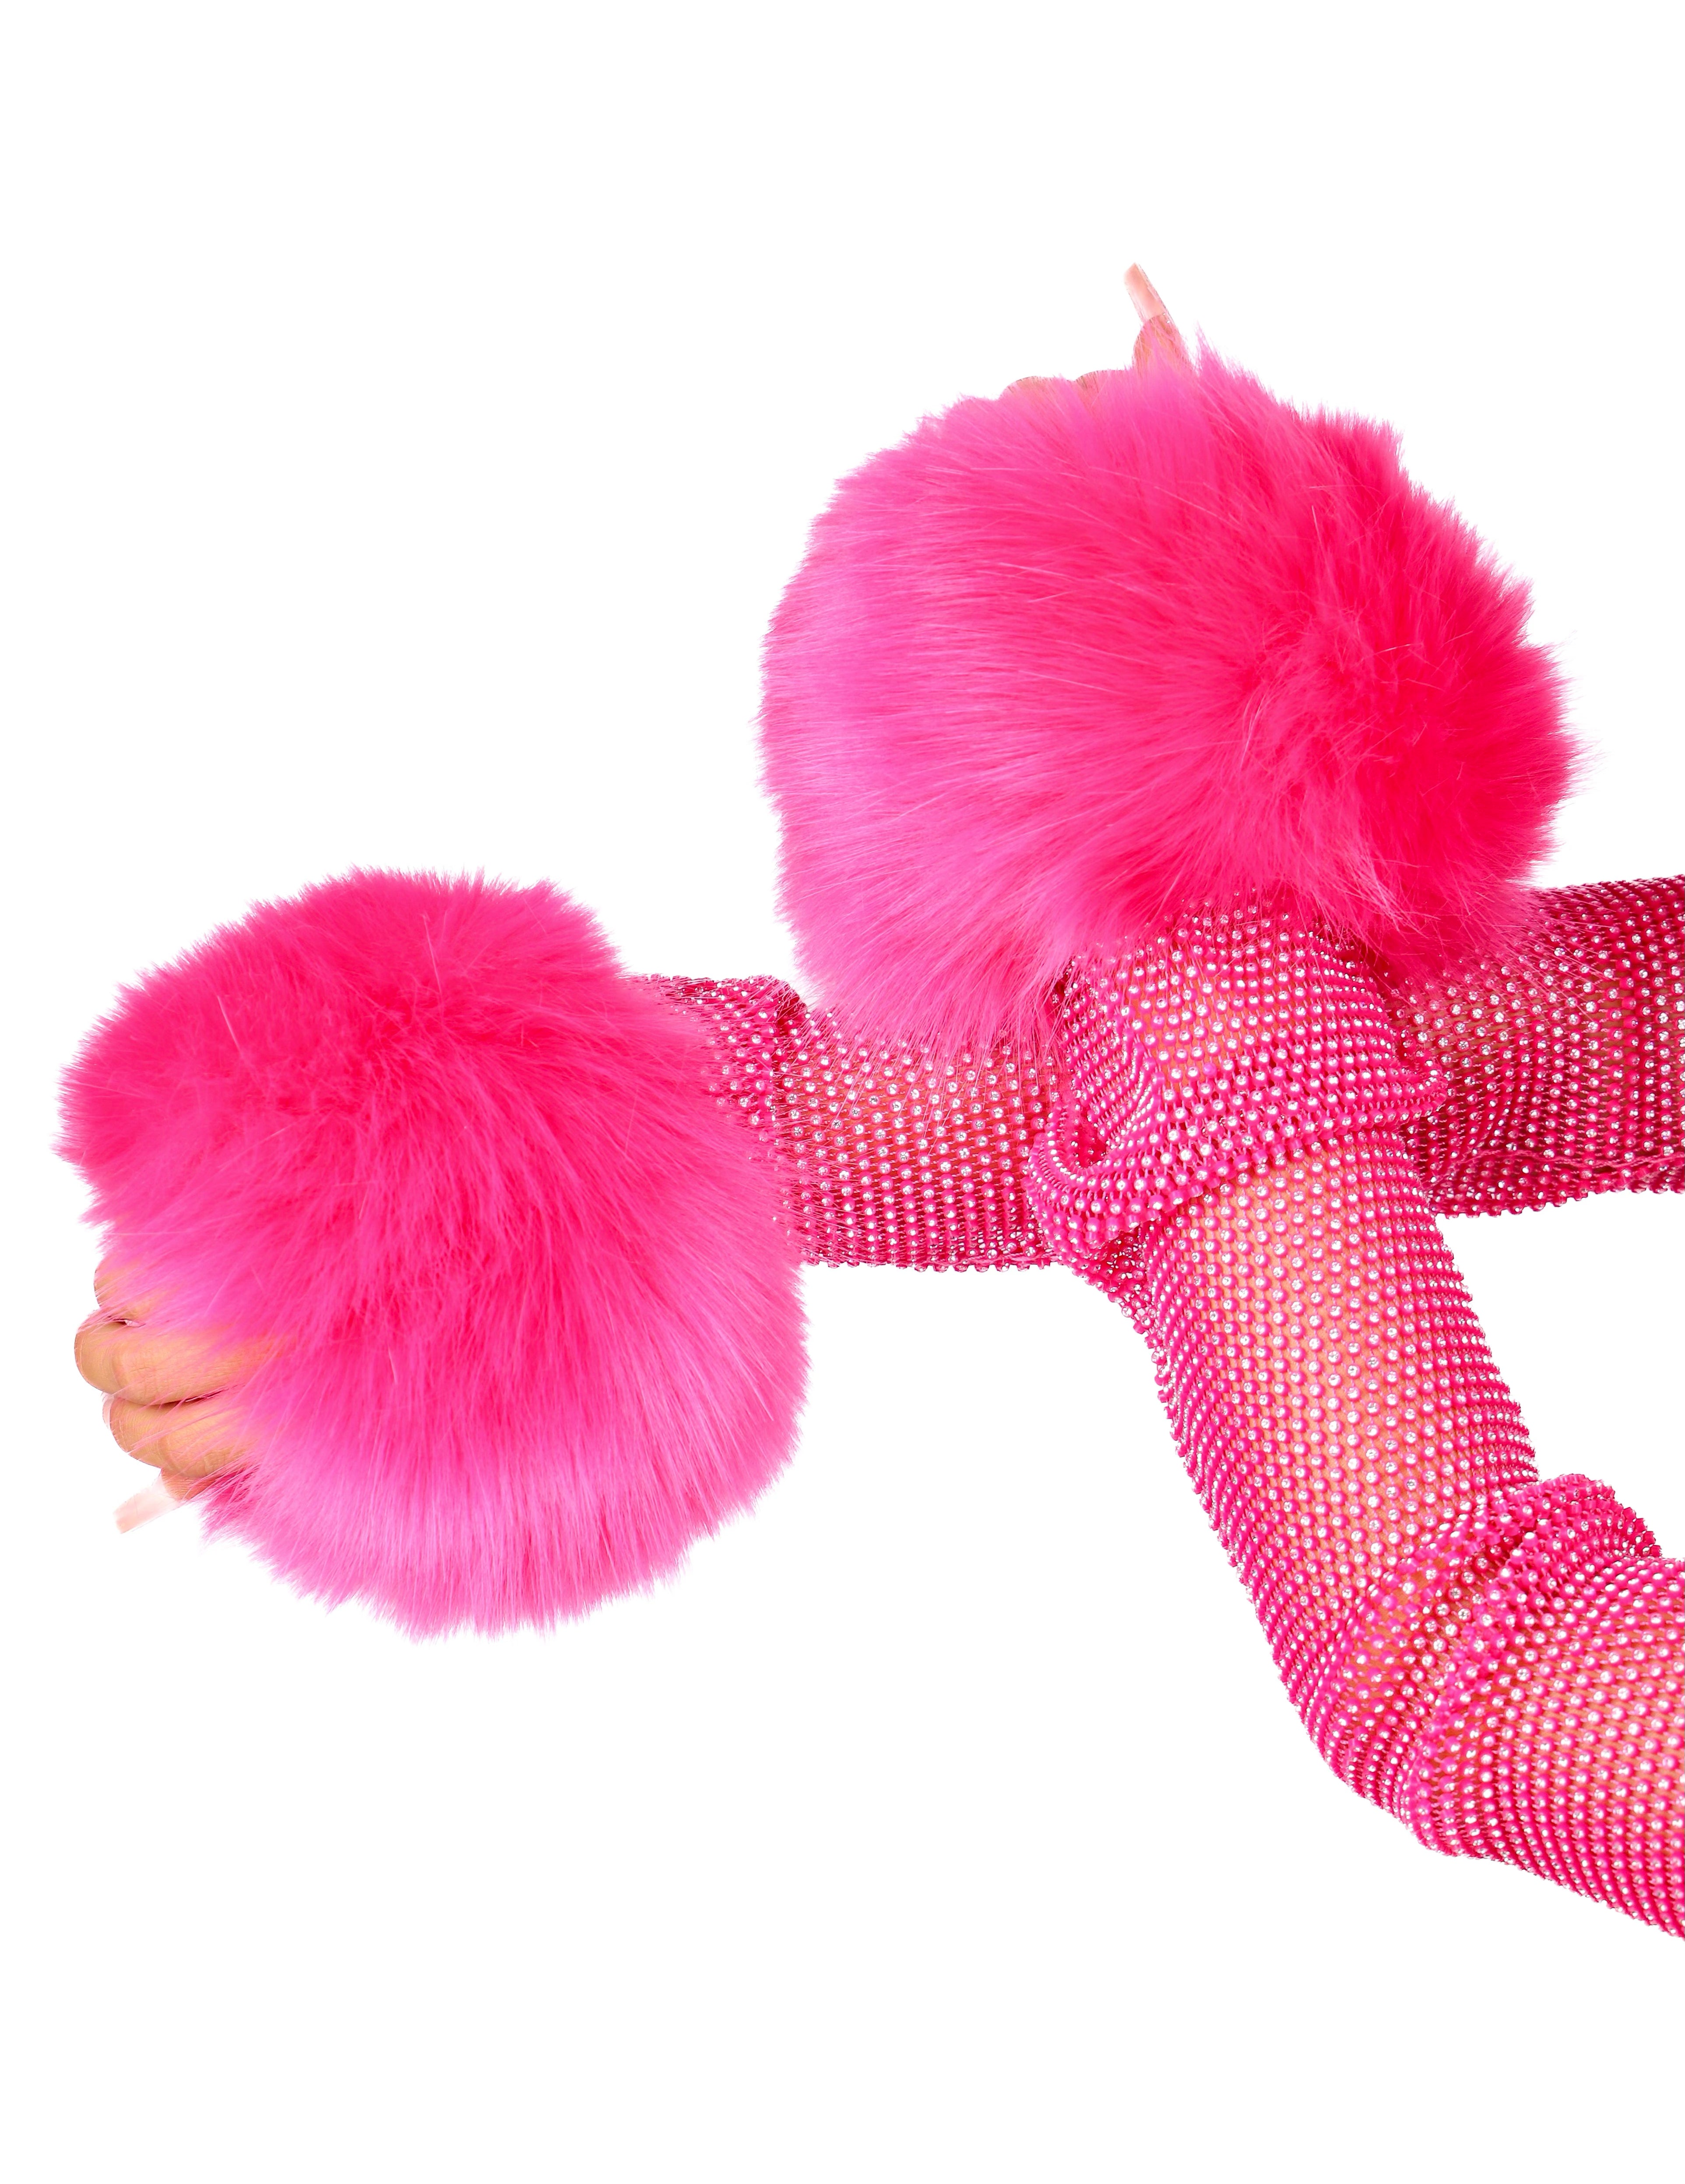 Fuzzy Hot Pink Wrist Cuffs